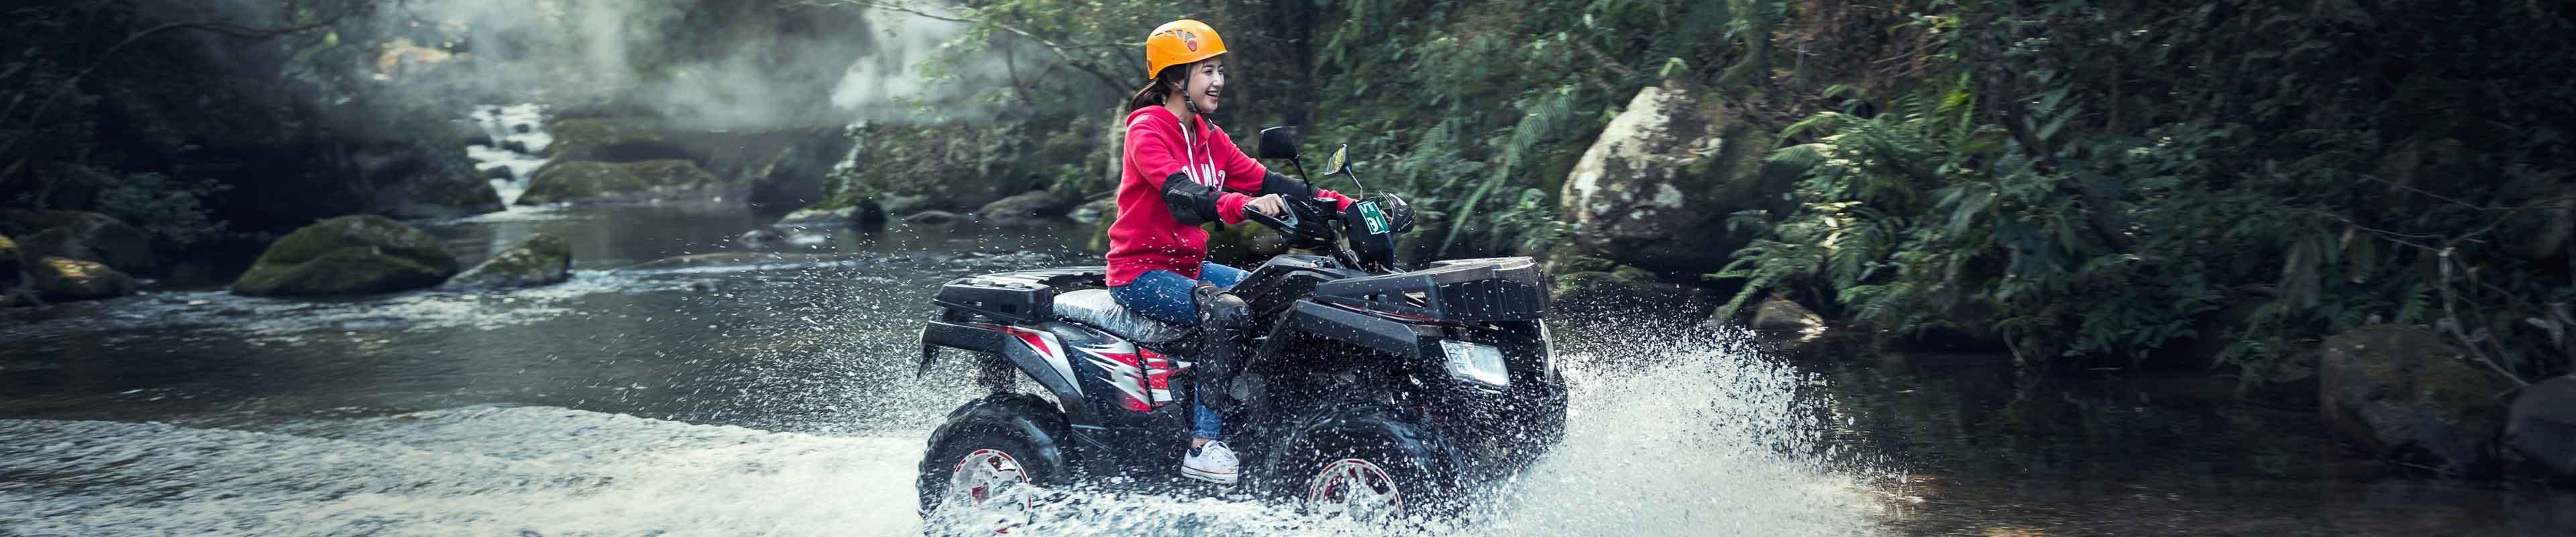 Girl riding through river on ATV.